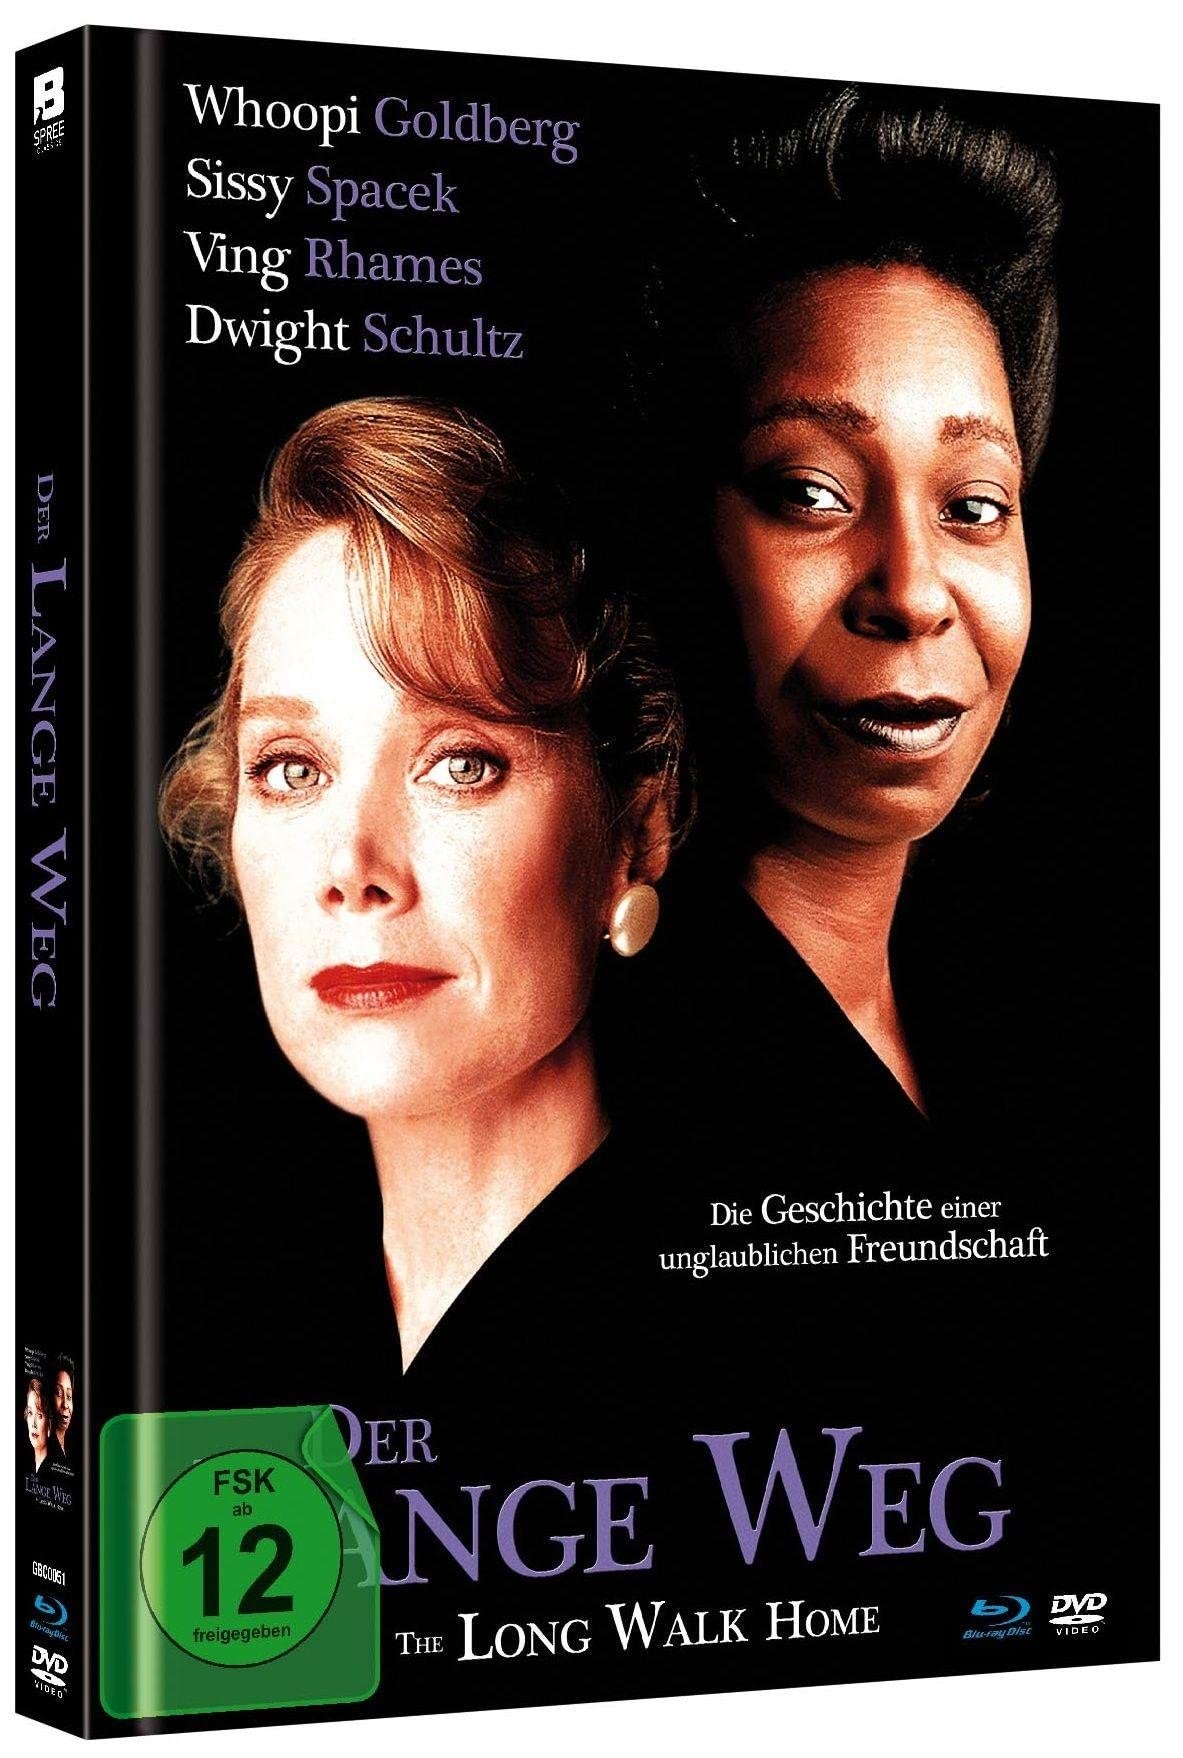 Der lange Weg - The Long Walk Home - Limited Mediabook in HD neu abgetastet (+ DVD) [Blu-ray] (Neu differenzbesteuert)